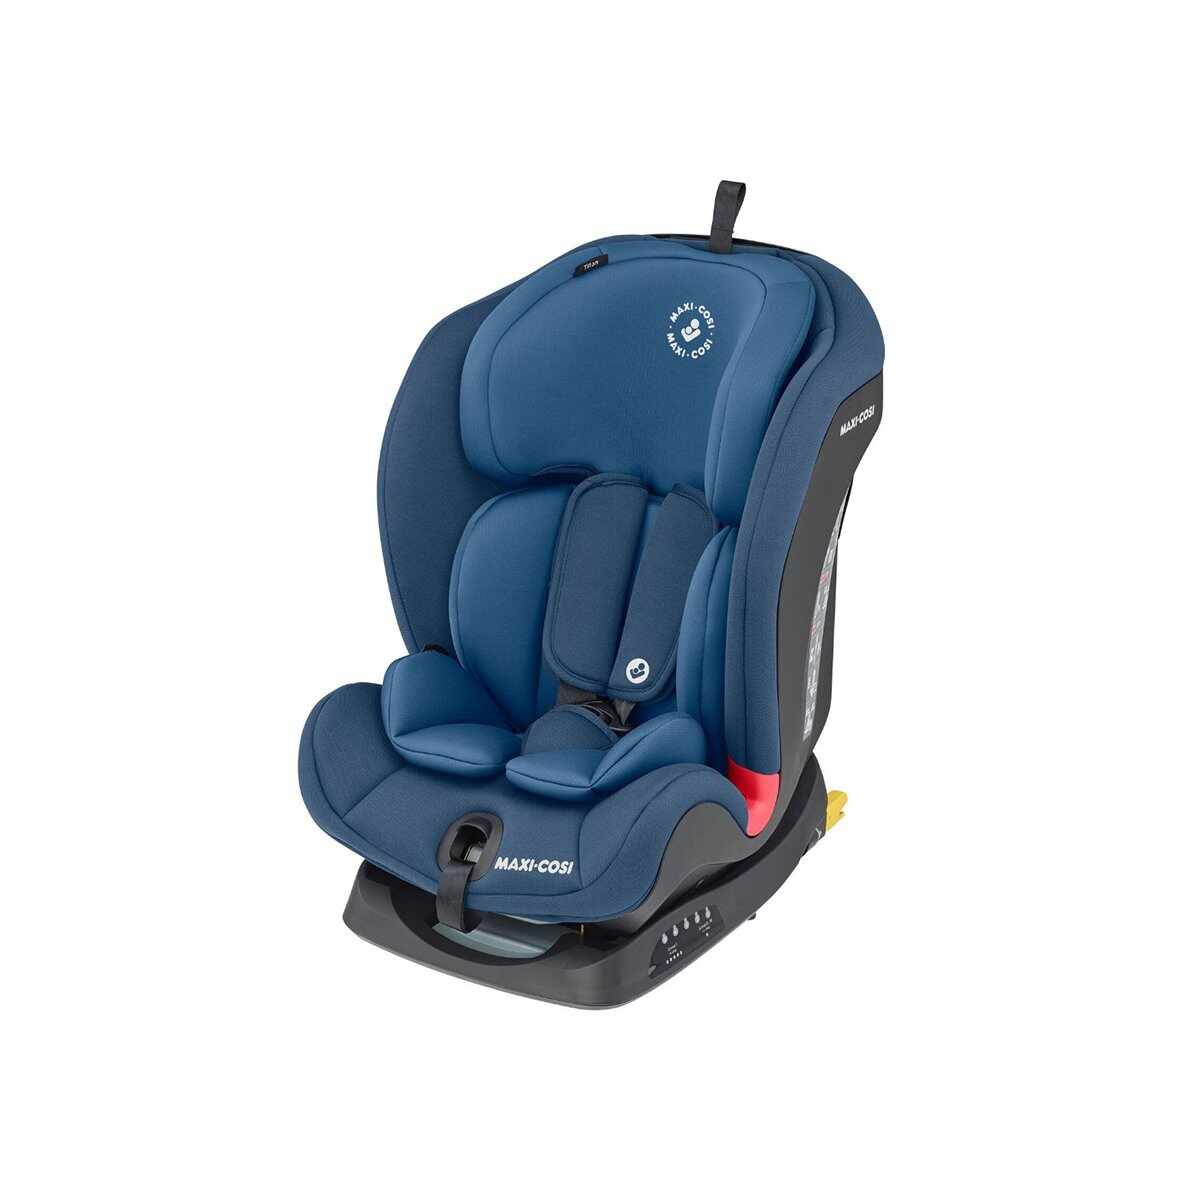 Scaun auto Maxi-Cosi Titan Basic Blue, 9 - 36 kg, Albastru